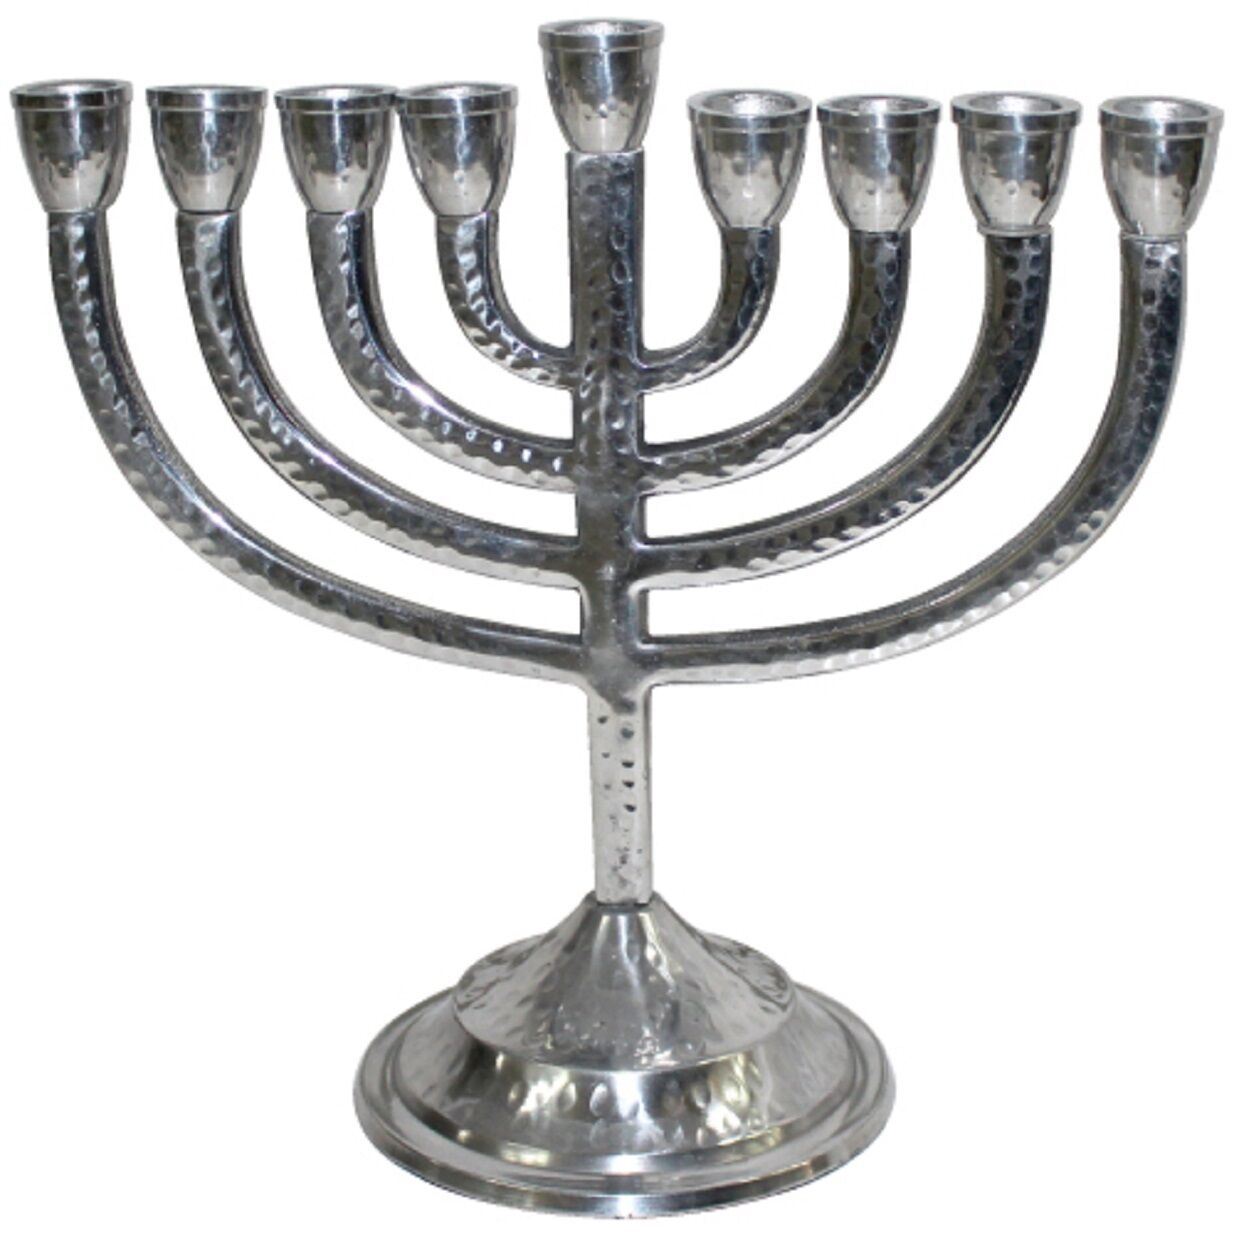 Judaica Hanukkah Menorah Hammered Silver Tone Aluminum Candles Israel